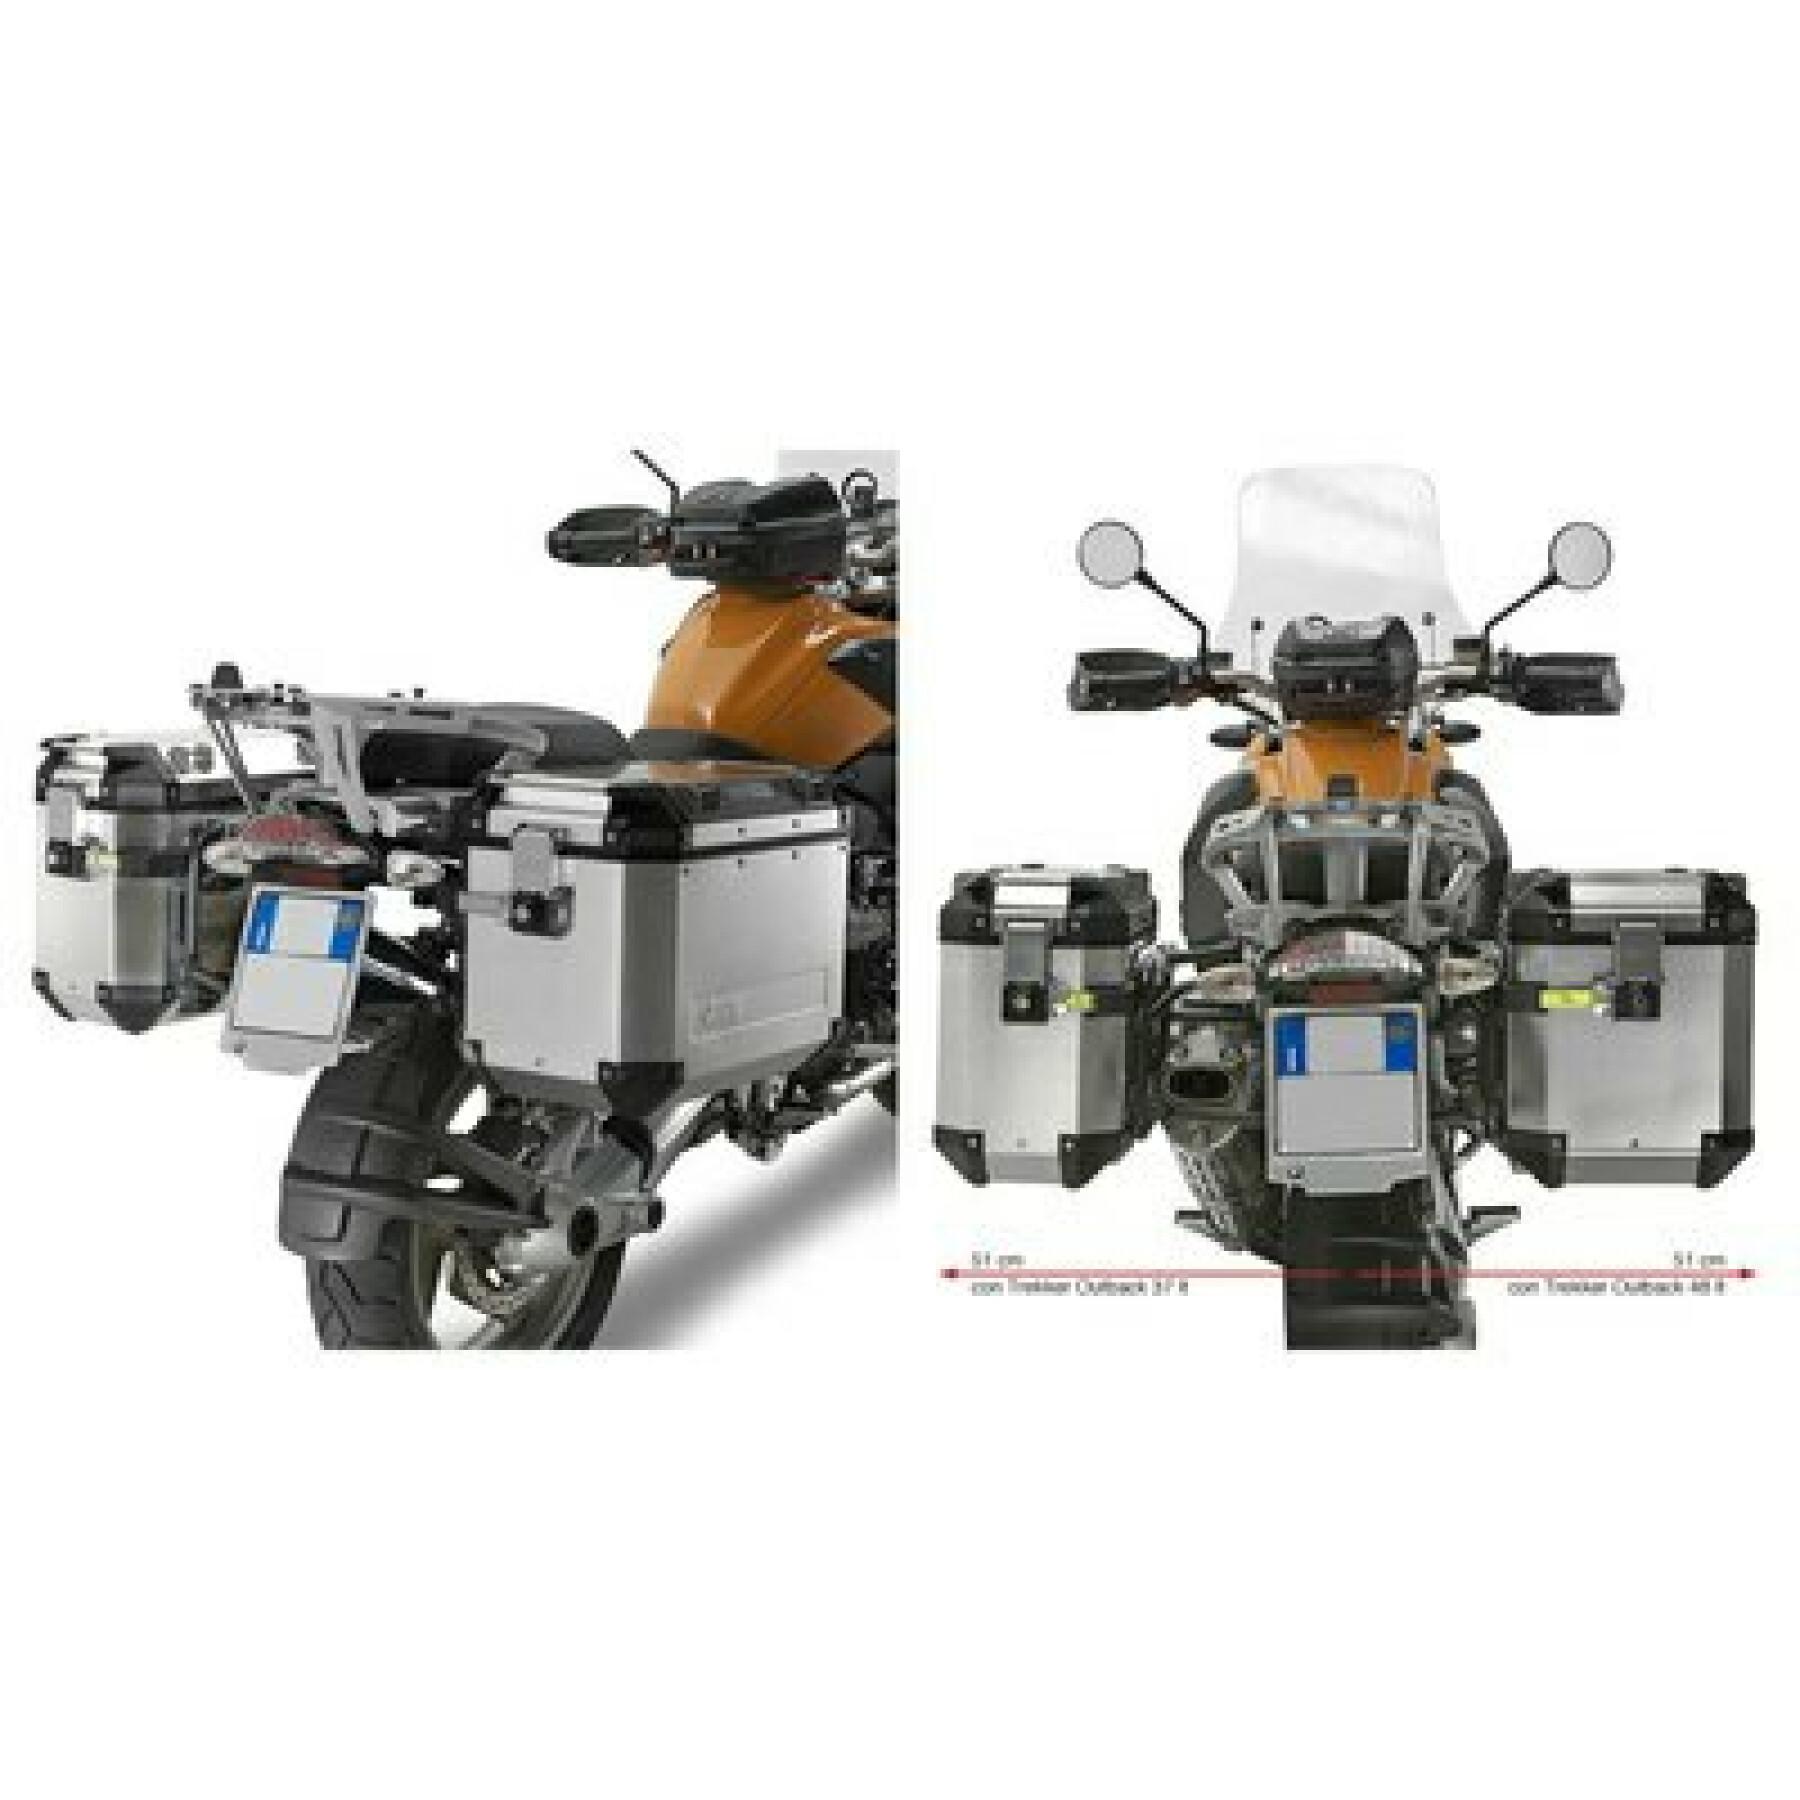 Motorrad-Seitenkofferhalter Givi Monokey Cam-Side Bmw R 1200 Gs (04 À 12)